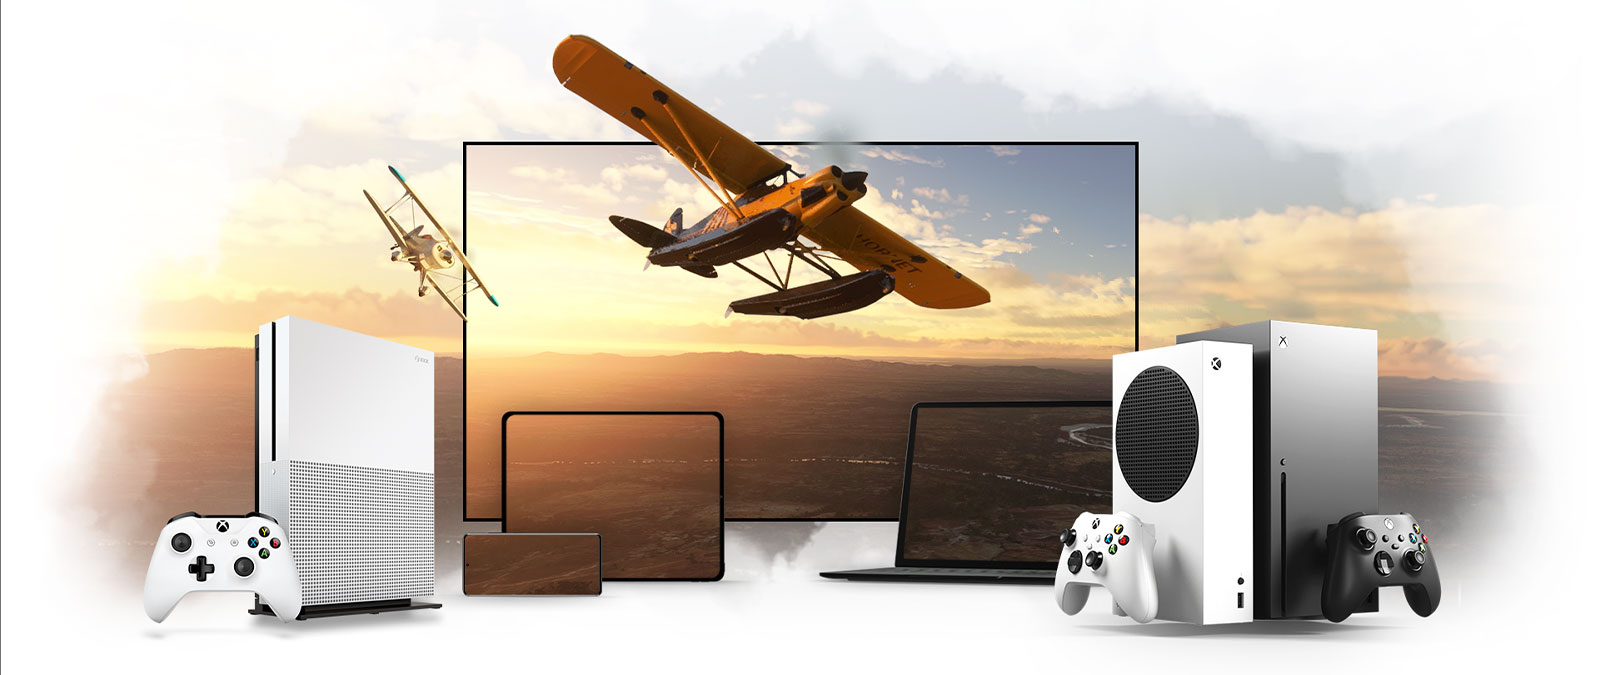 Uma série de dispositivos que inclui uma TV, uma Xbox One e uma Xbox Series X. Um avião a hélice afasta-se em direção ao horizonte iluminado pelo sol.